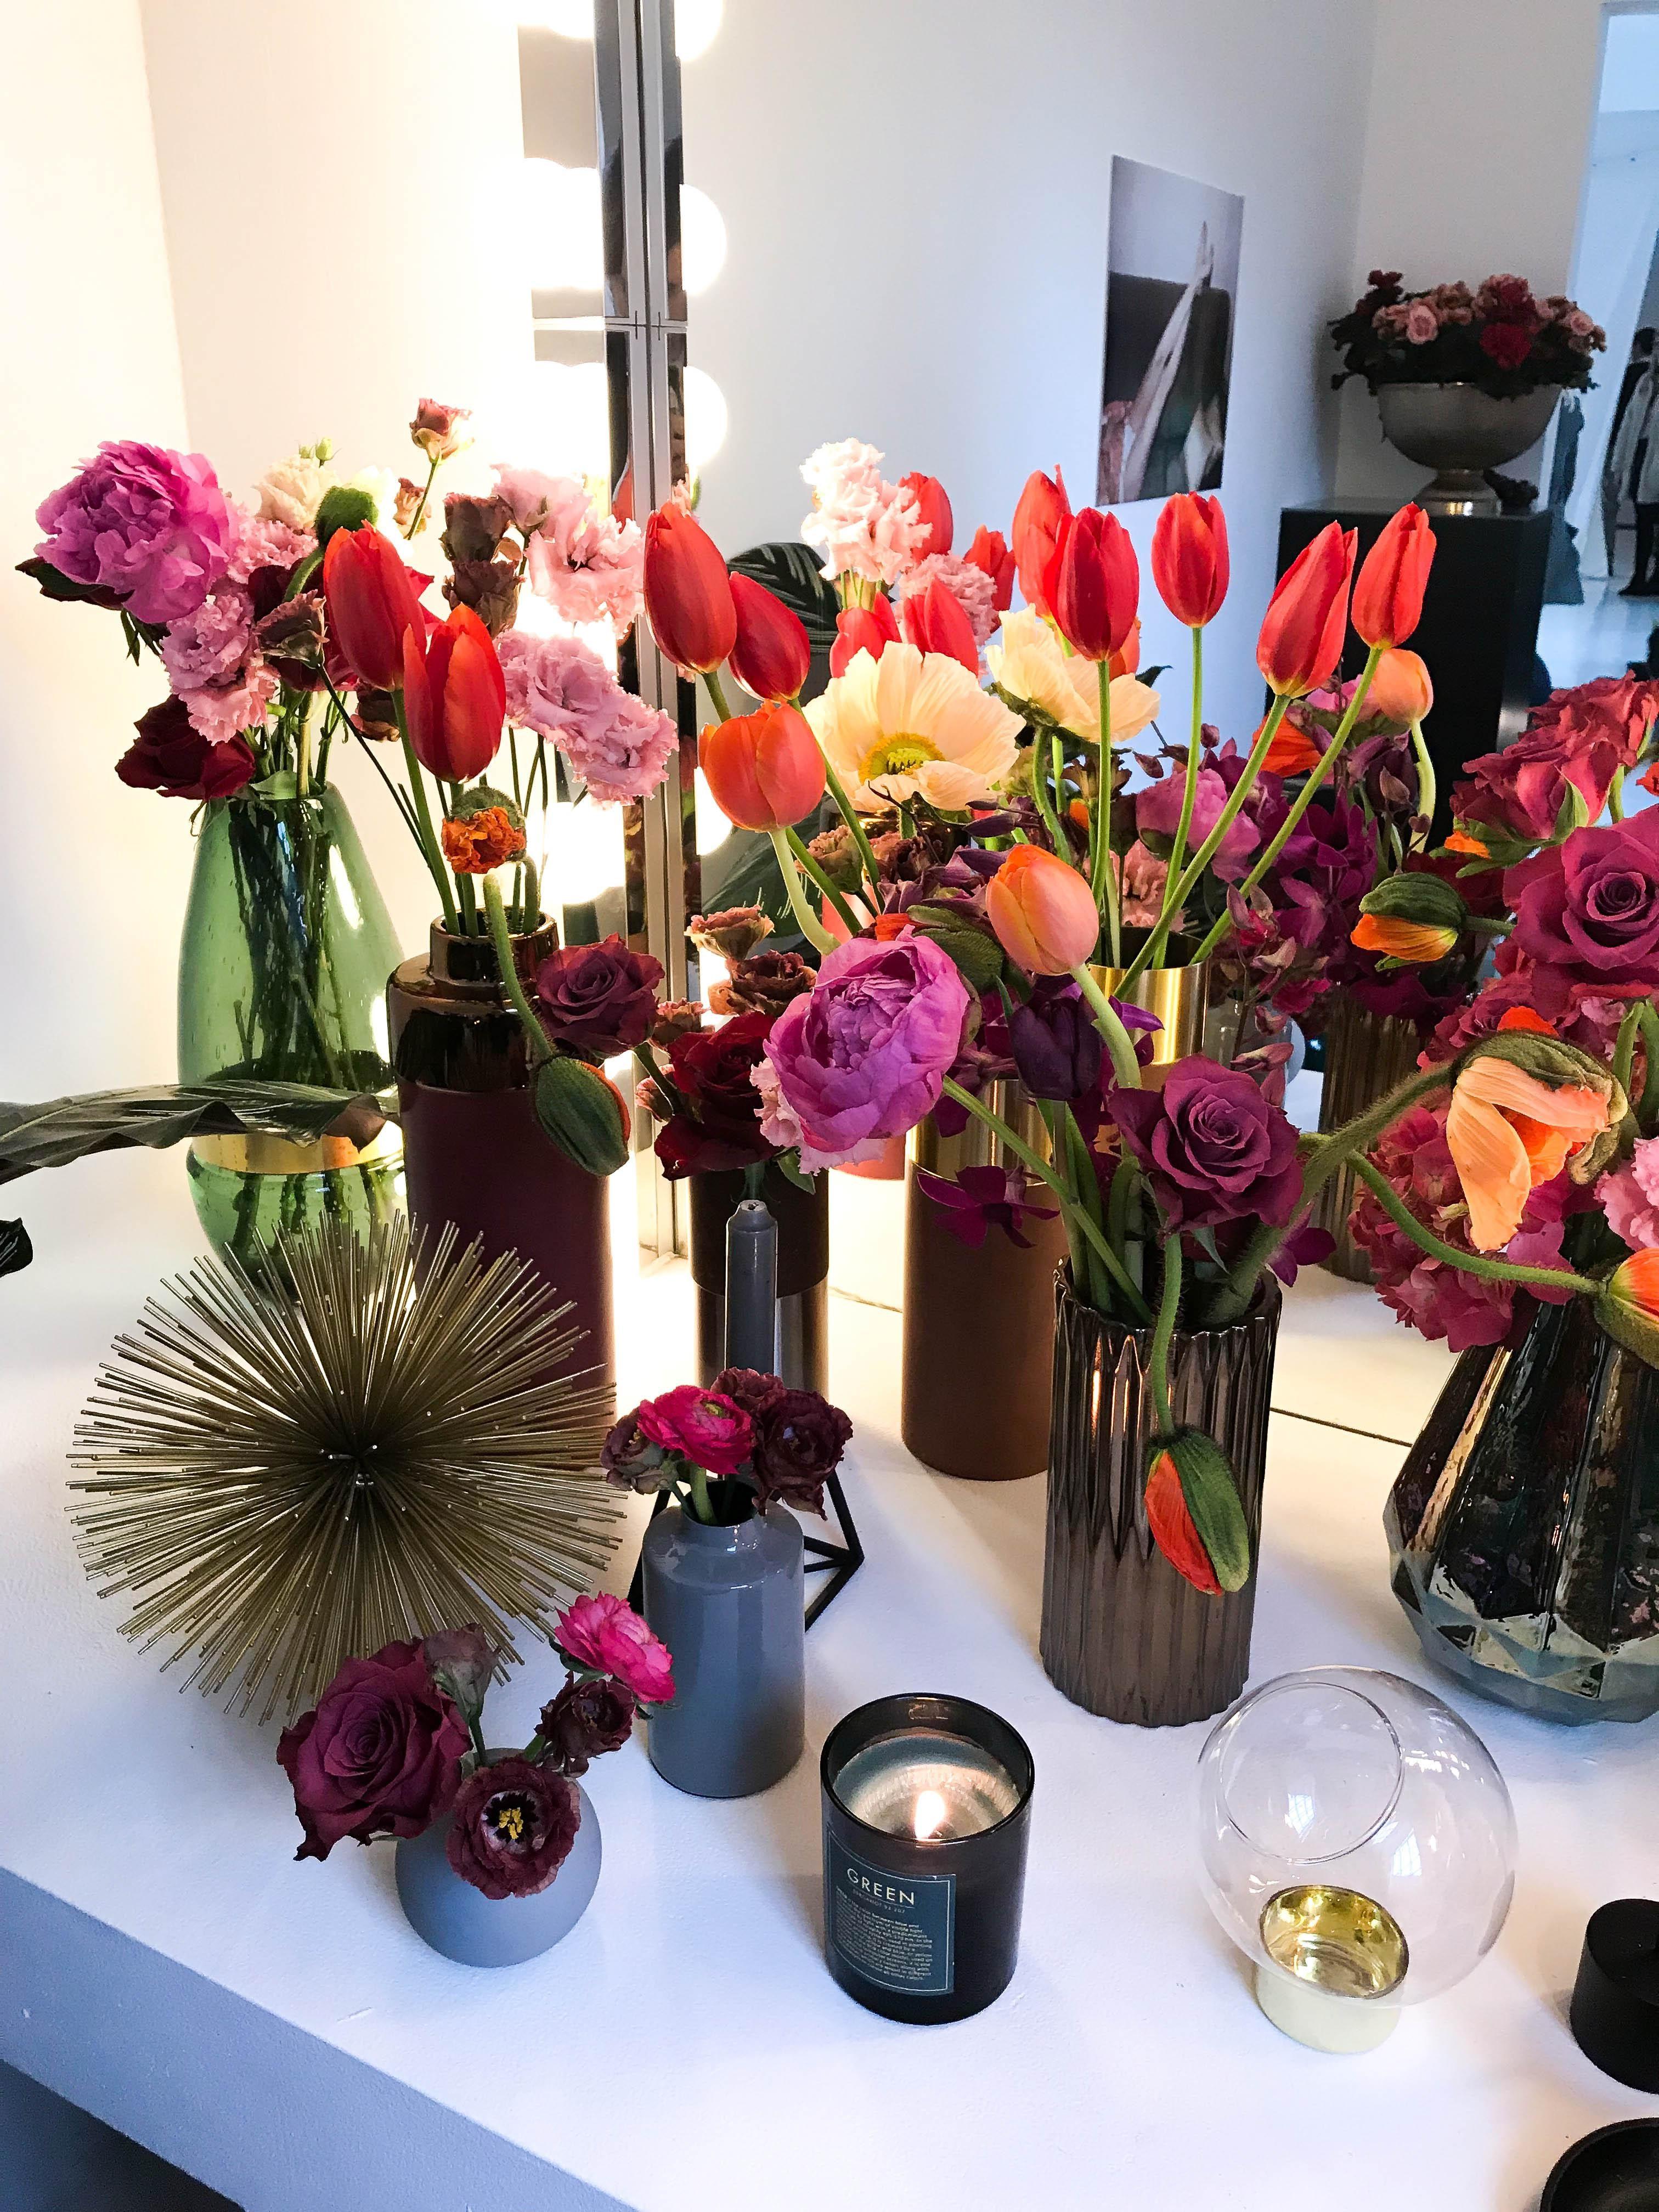 Pflanzen-Trend Nr. 2 heißt Romance 3.0 und kommt mit opulenten Blüten und Vasen
#blumen #blumenvase #pflanzenfreude